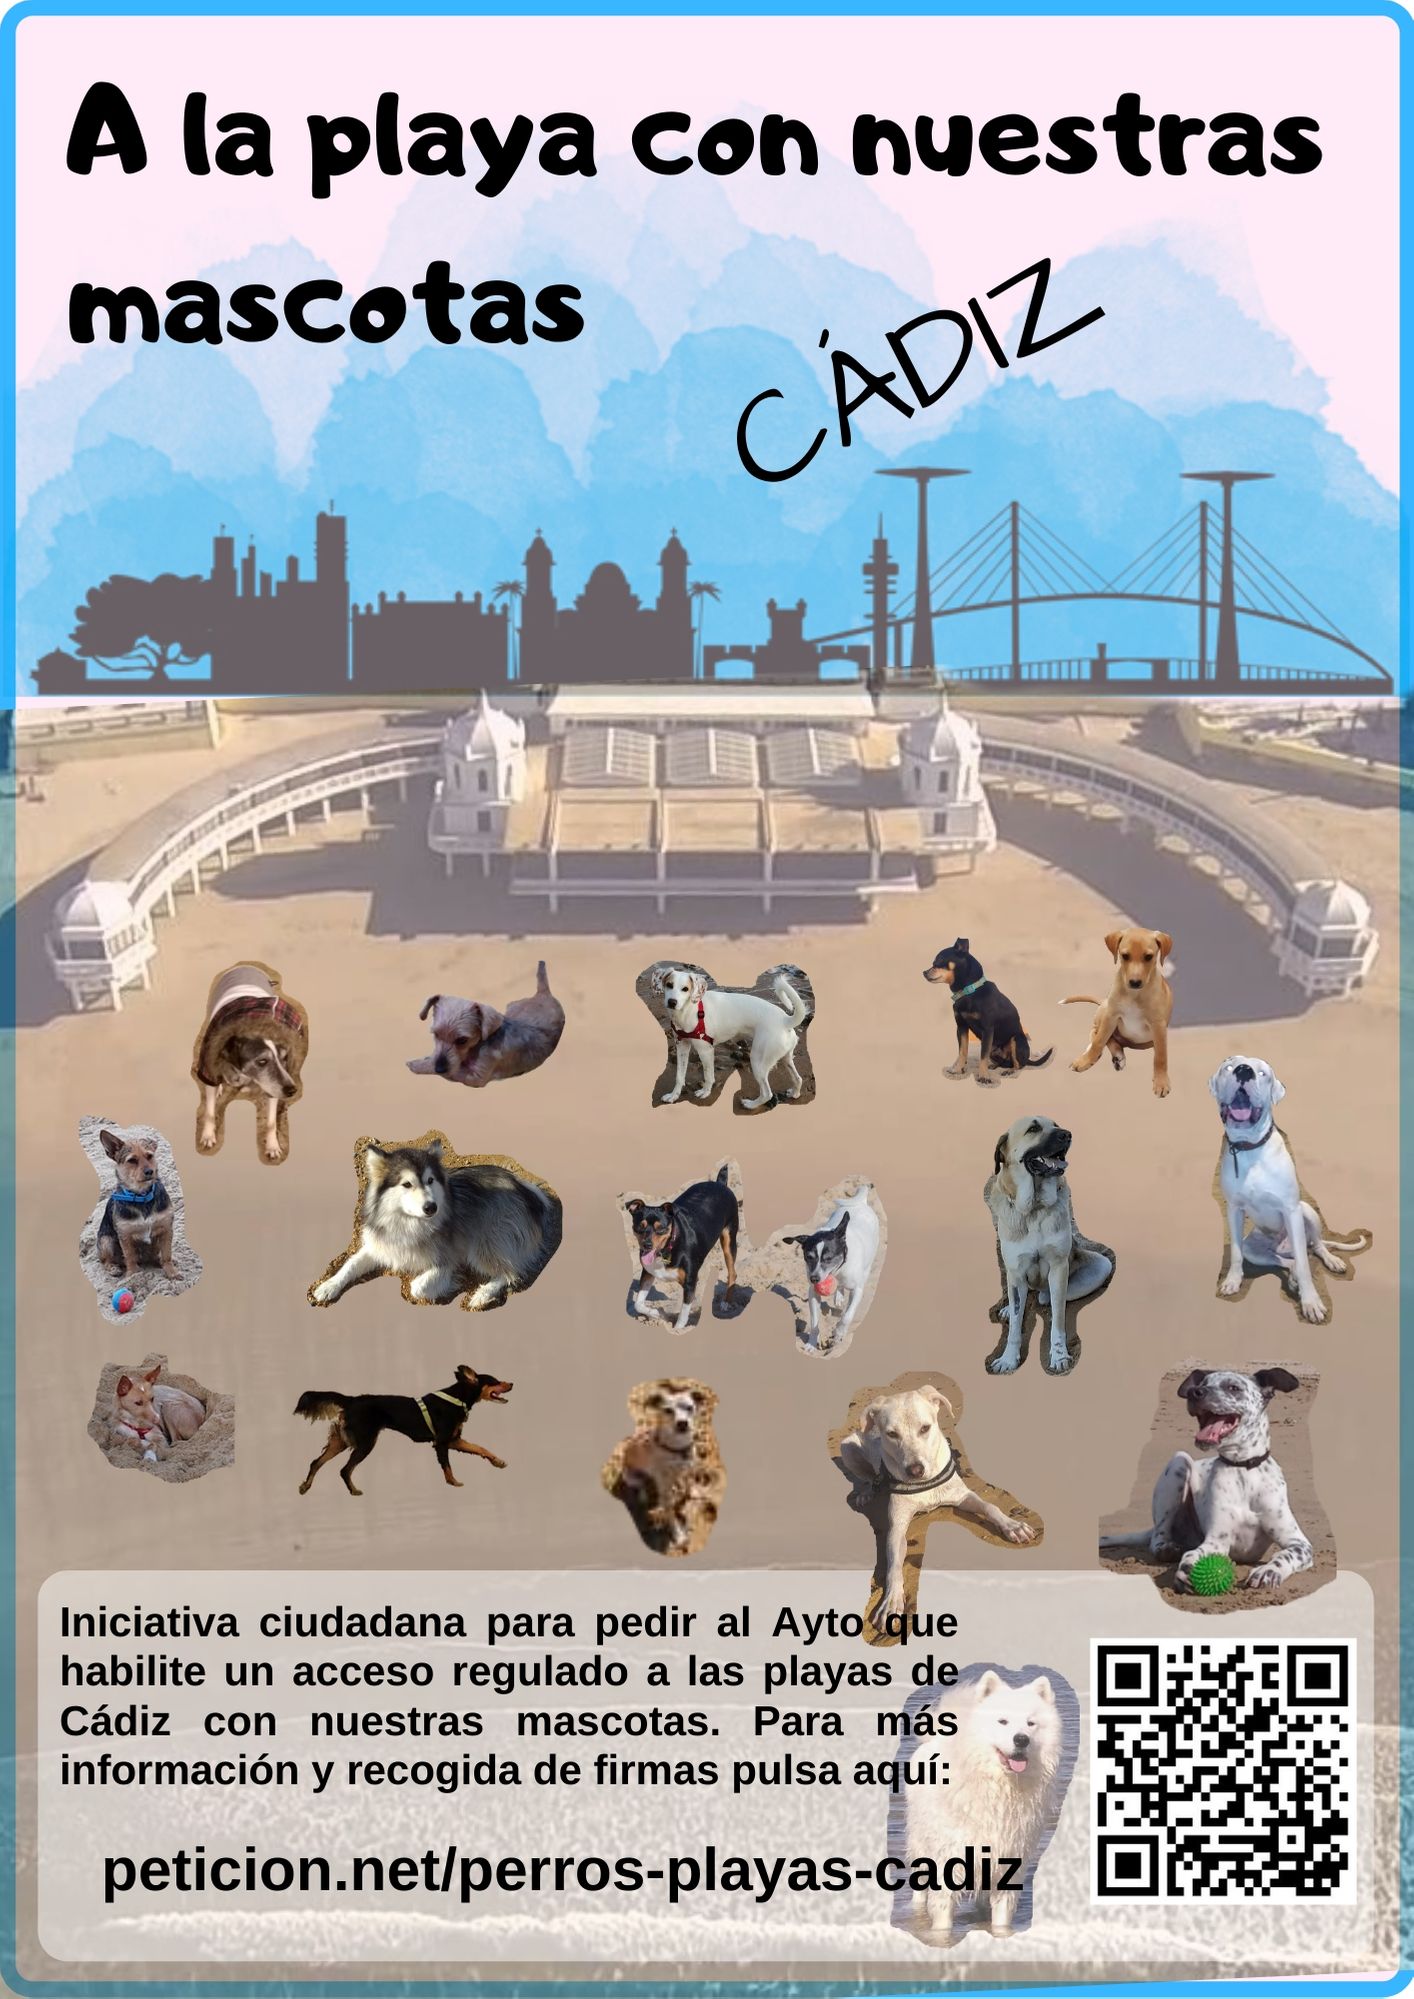 Gran engaño adolescente Acostumbrarse a Habilitar acceso a las playas de Cádiz con nuestras mascotas - Peticion.es